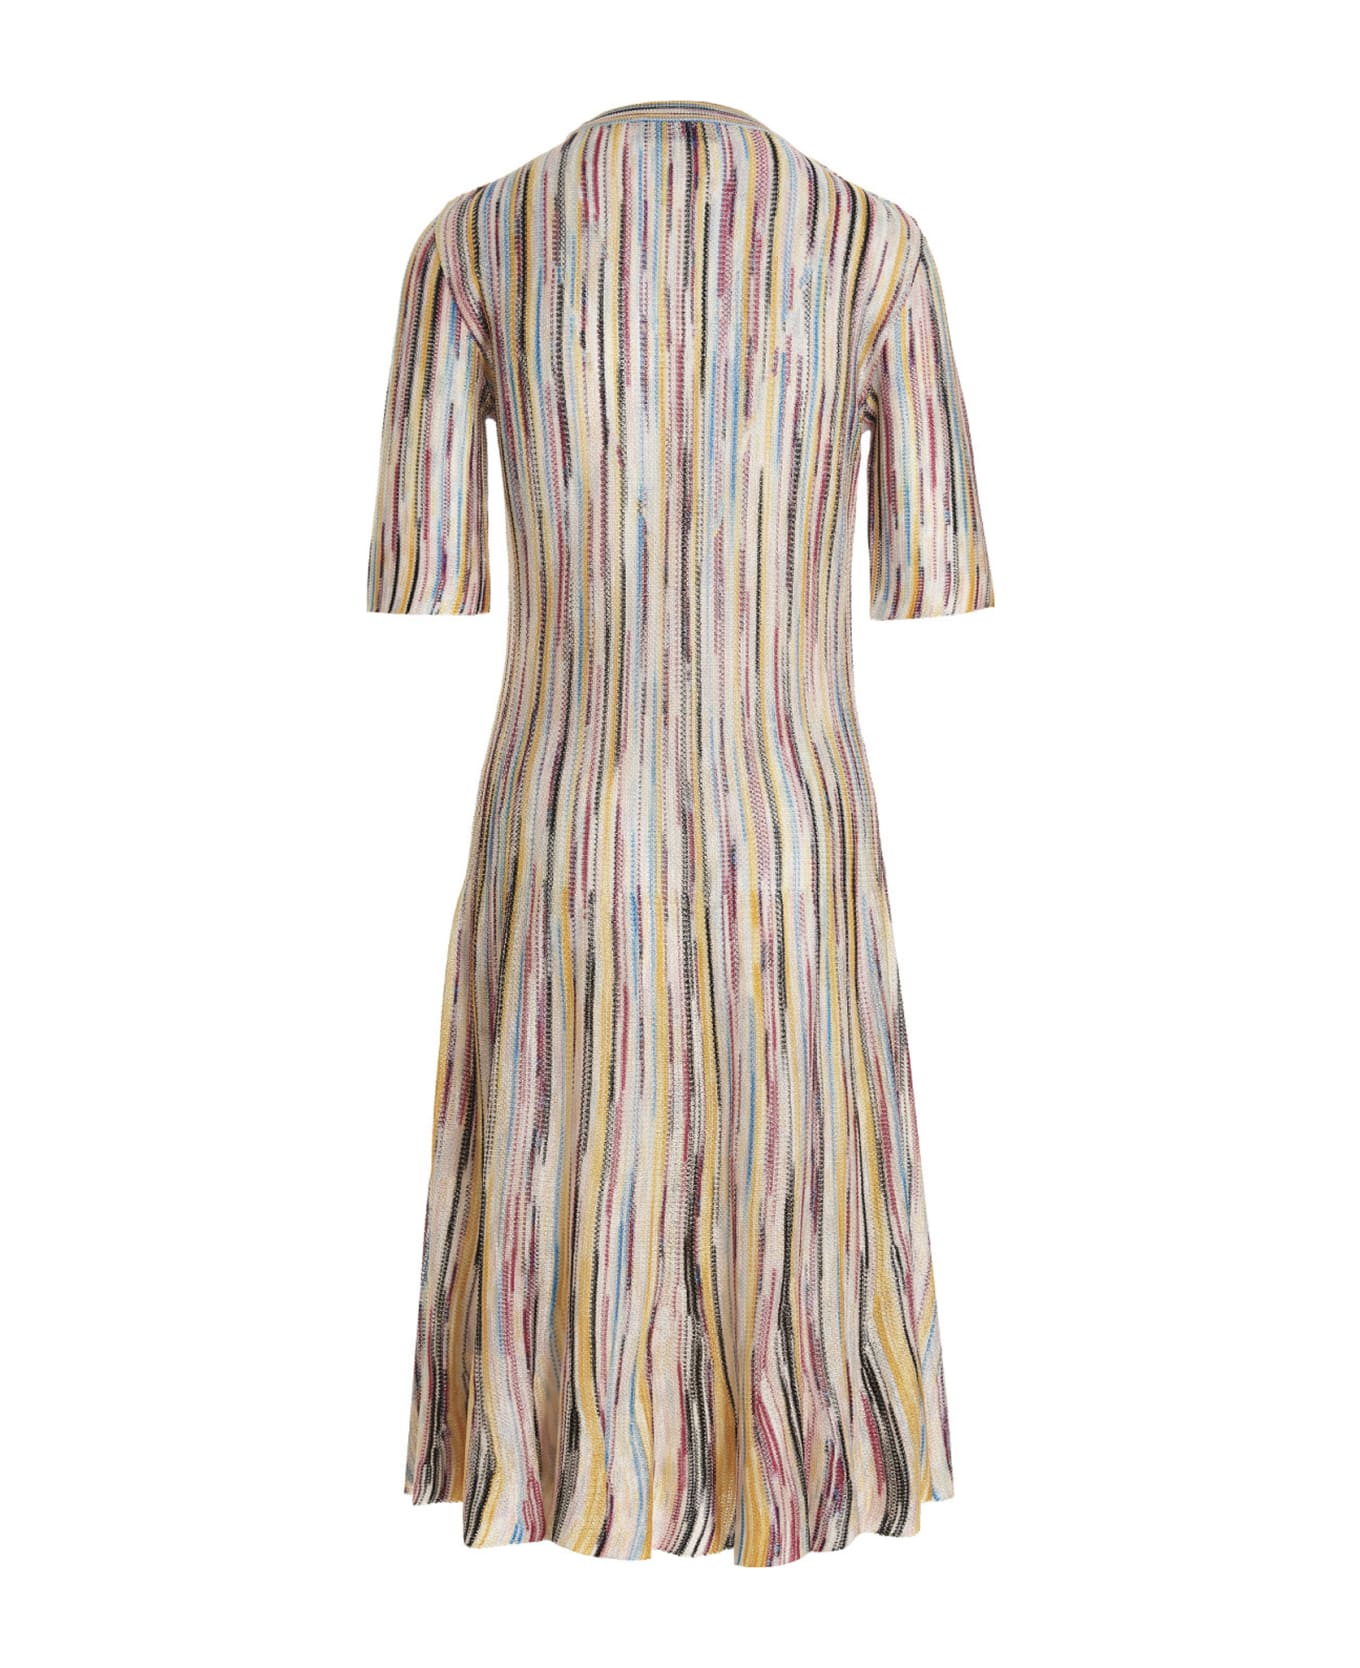 Missoni Multicolor Striped Dress - Multicolor